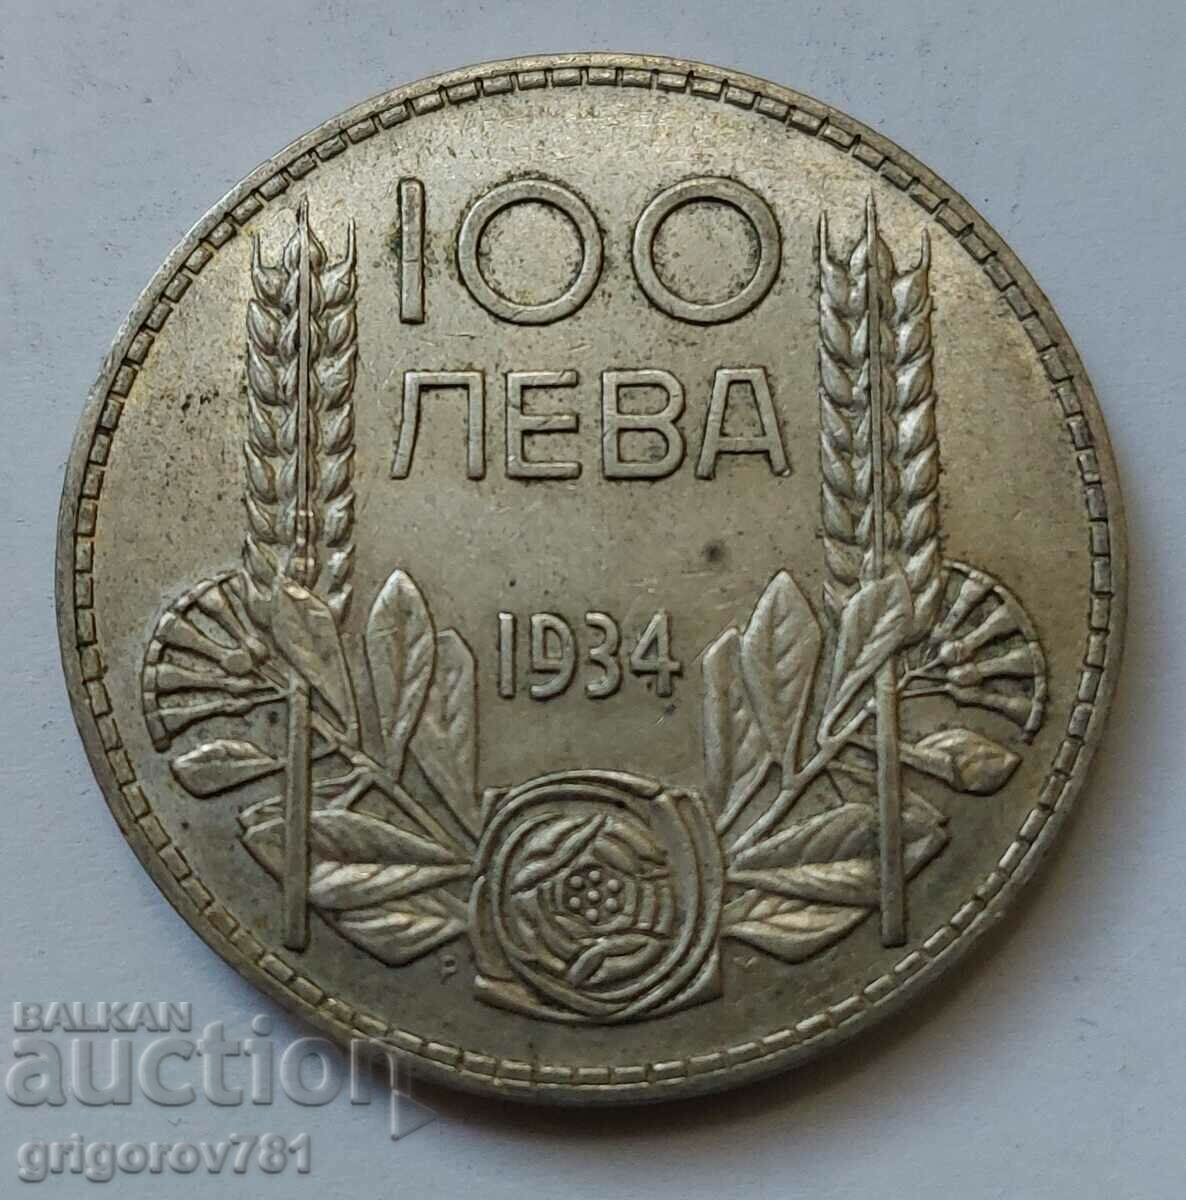 Ασήμι 100 λέβα Βουλγαρία 1934 - ασημένιο νόμισμα #101